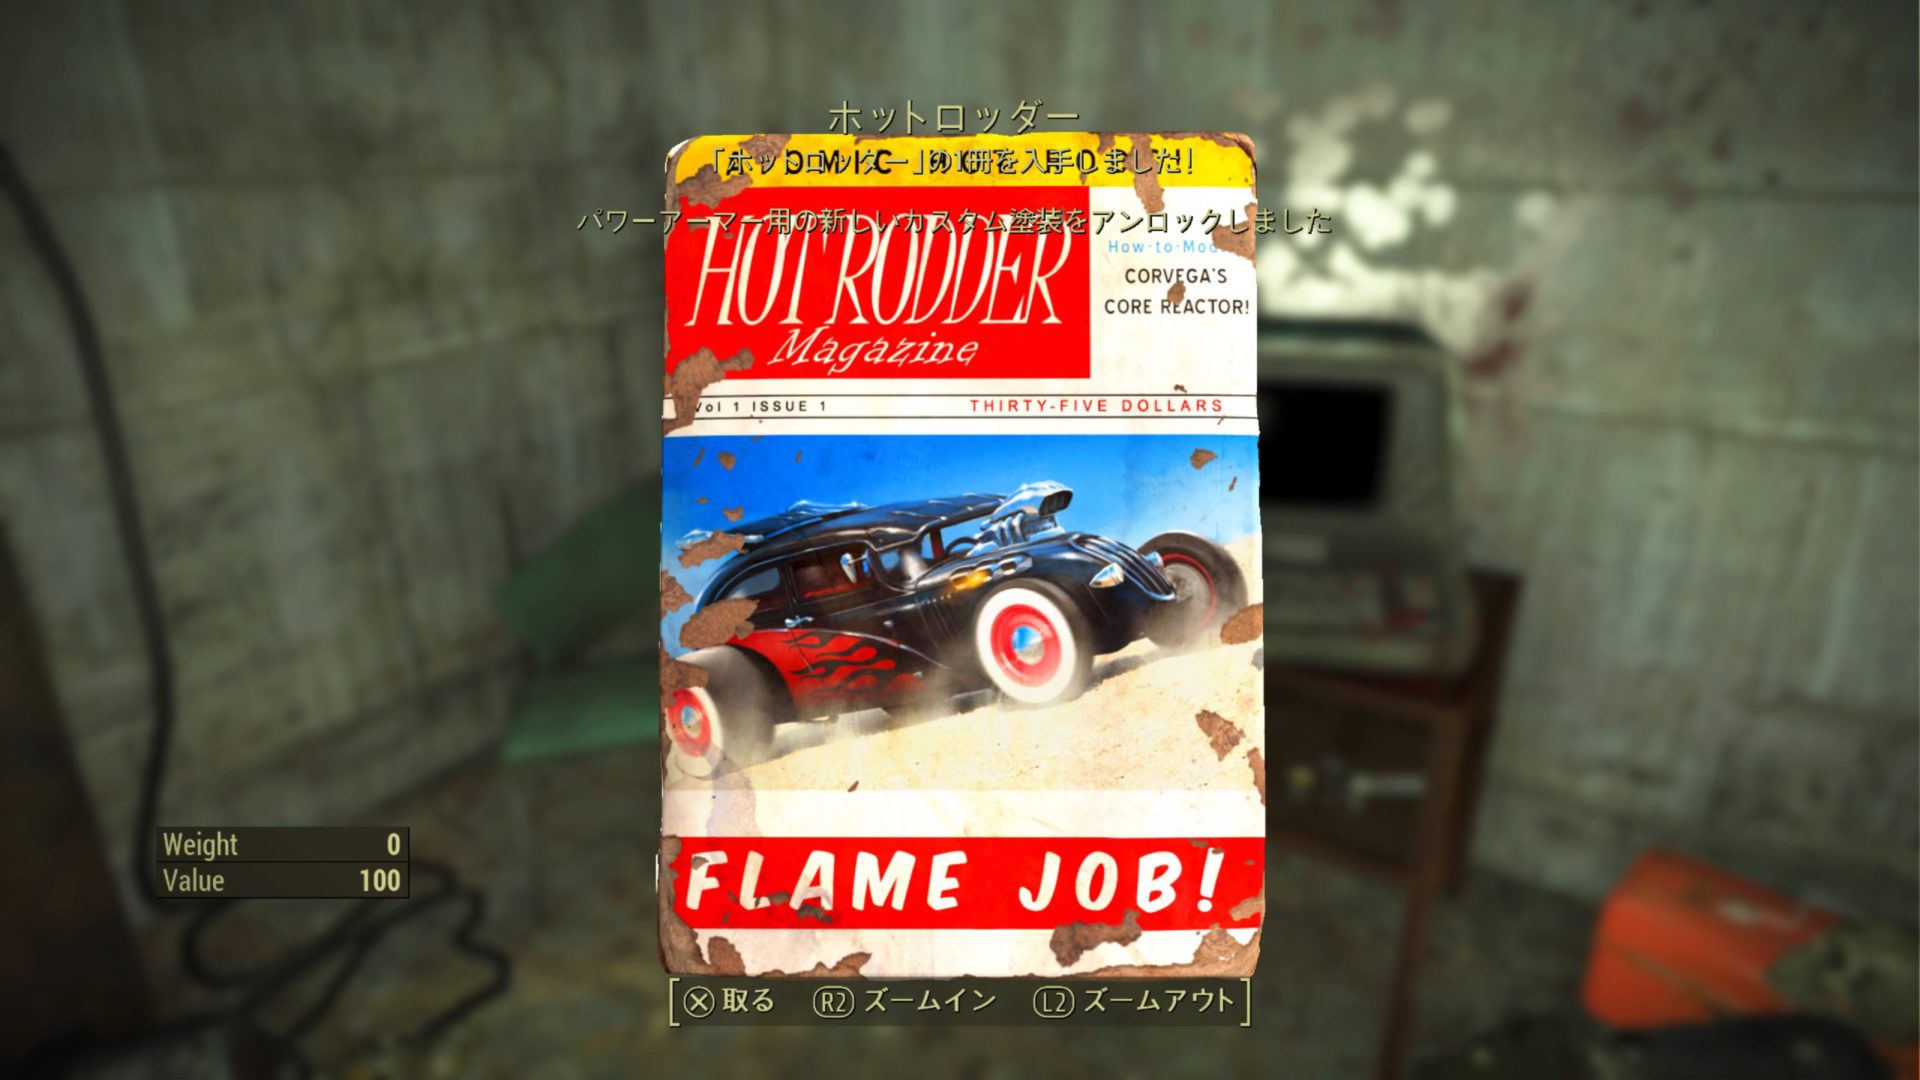 ホットロッダー Flame Job!